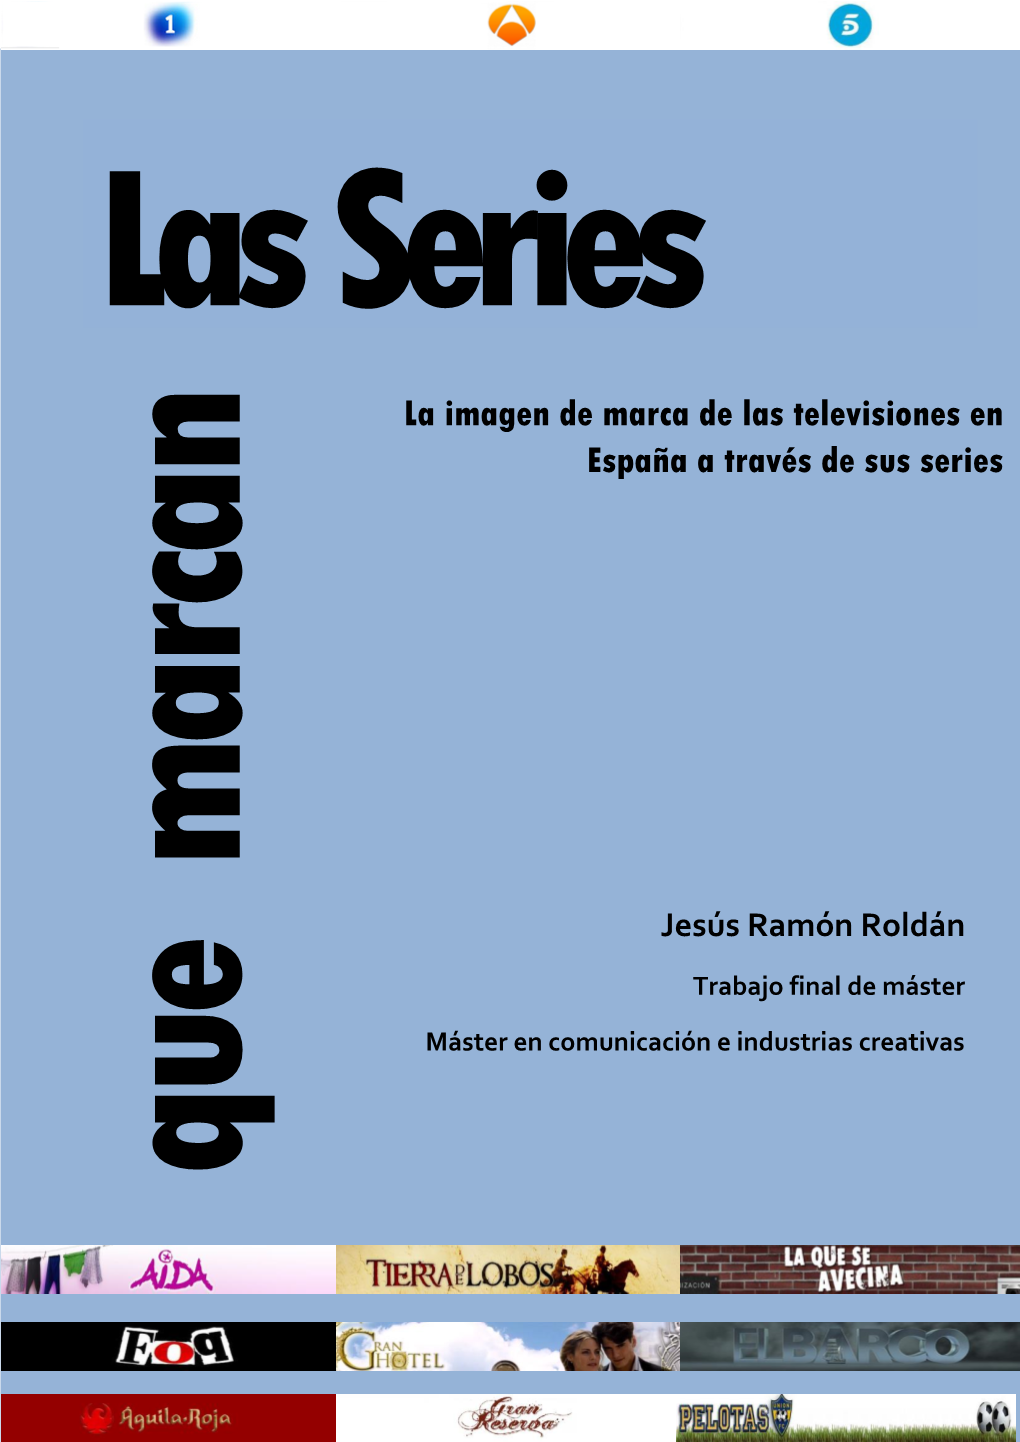 La Imagen De Marca De Las Televisiones En España a Través De Sus Series